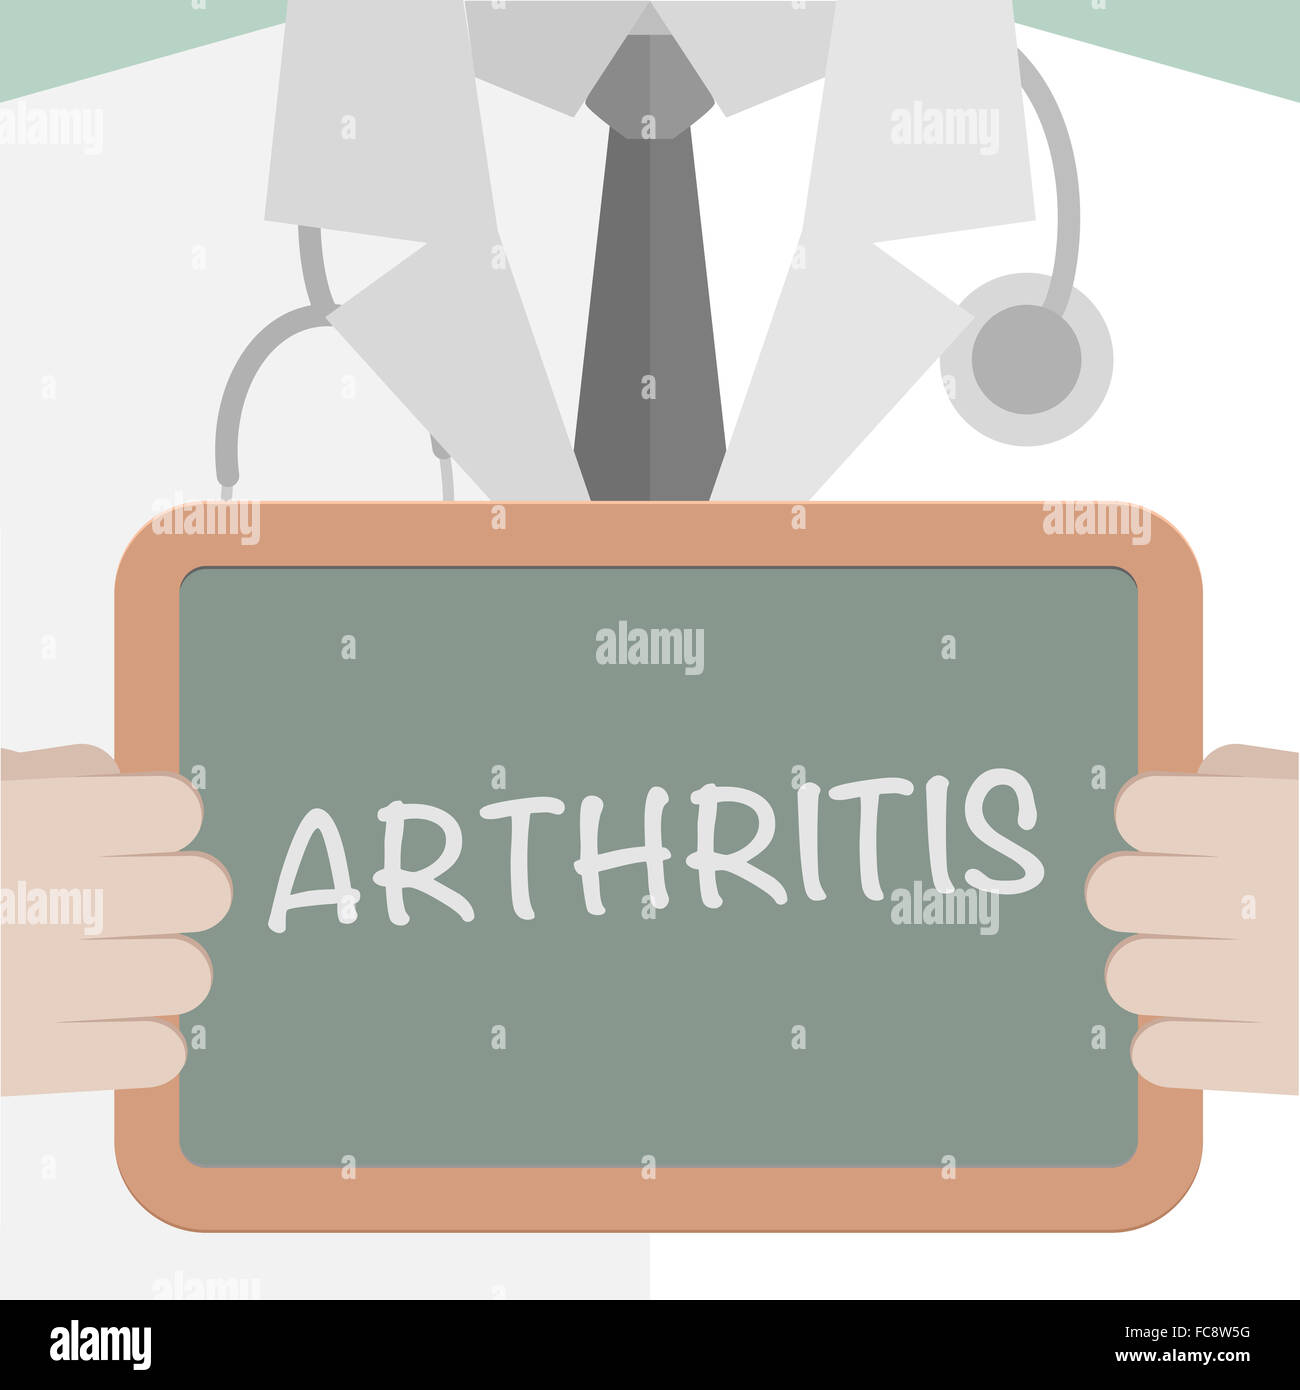 Arthritis Stockfoto